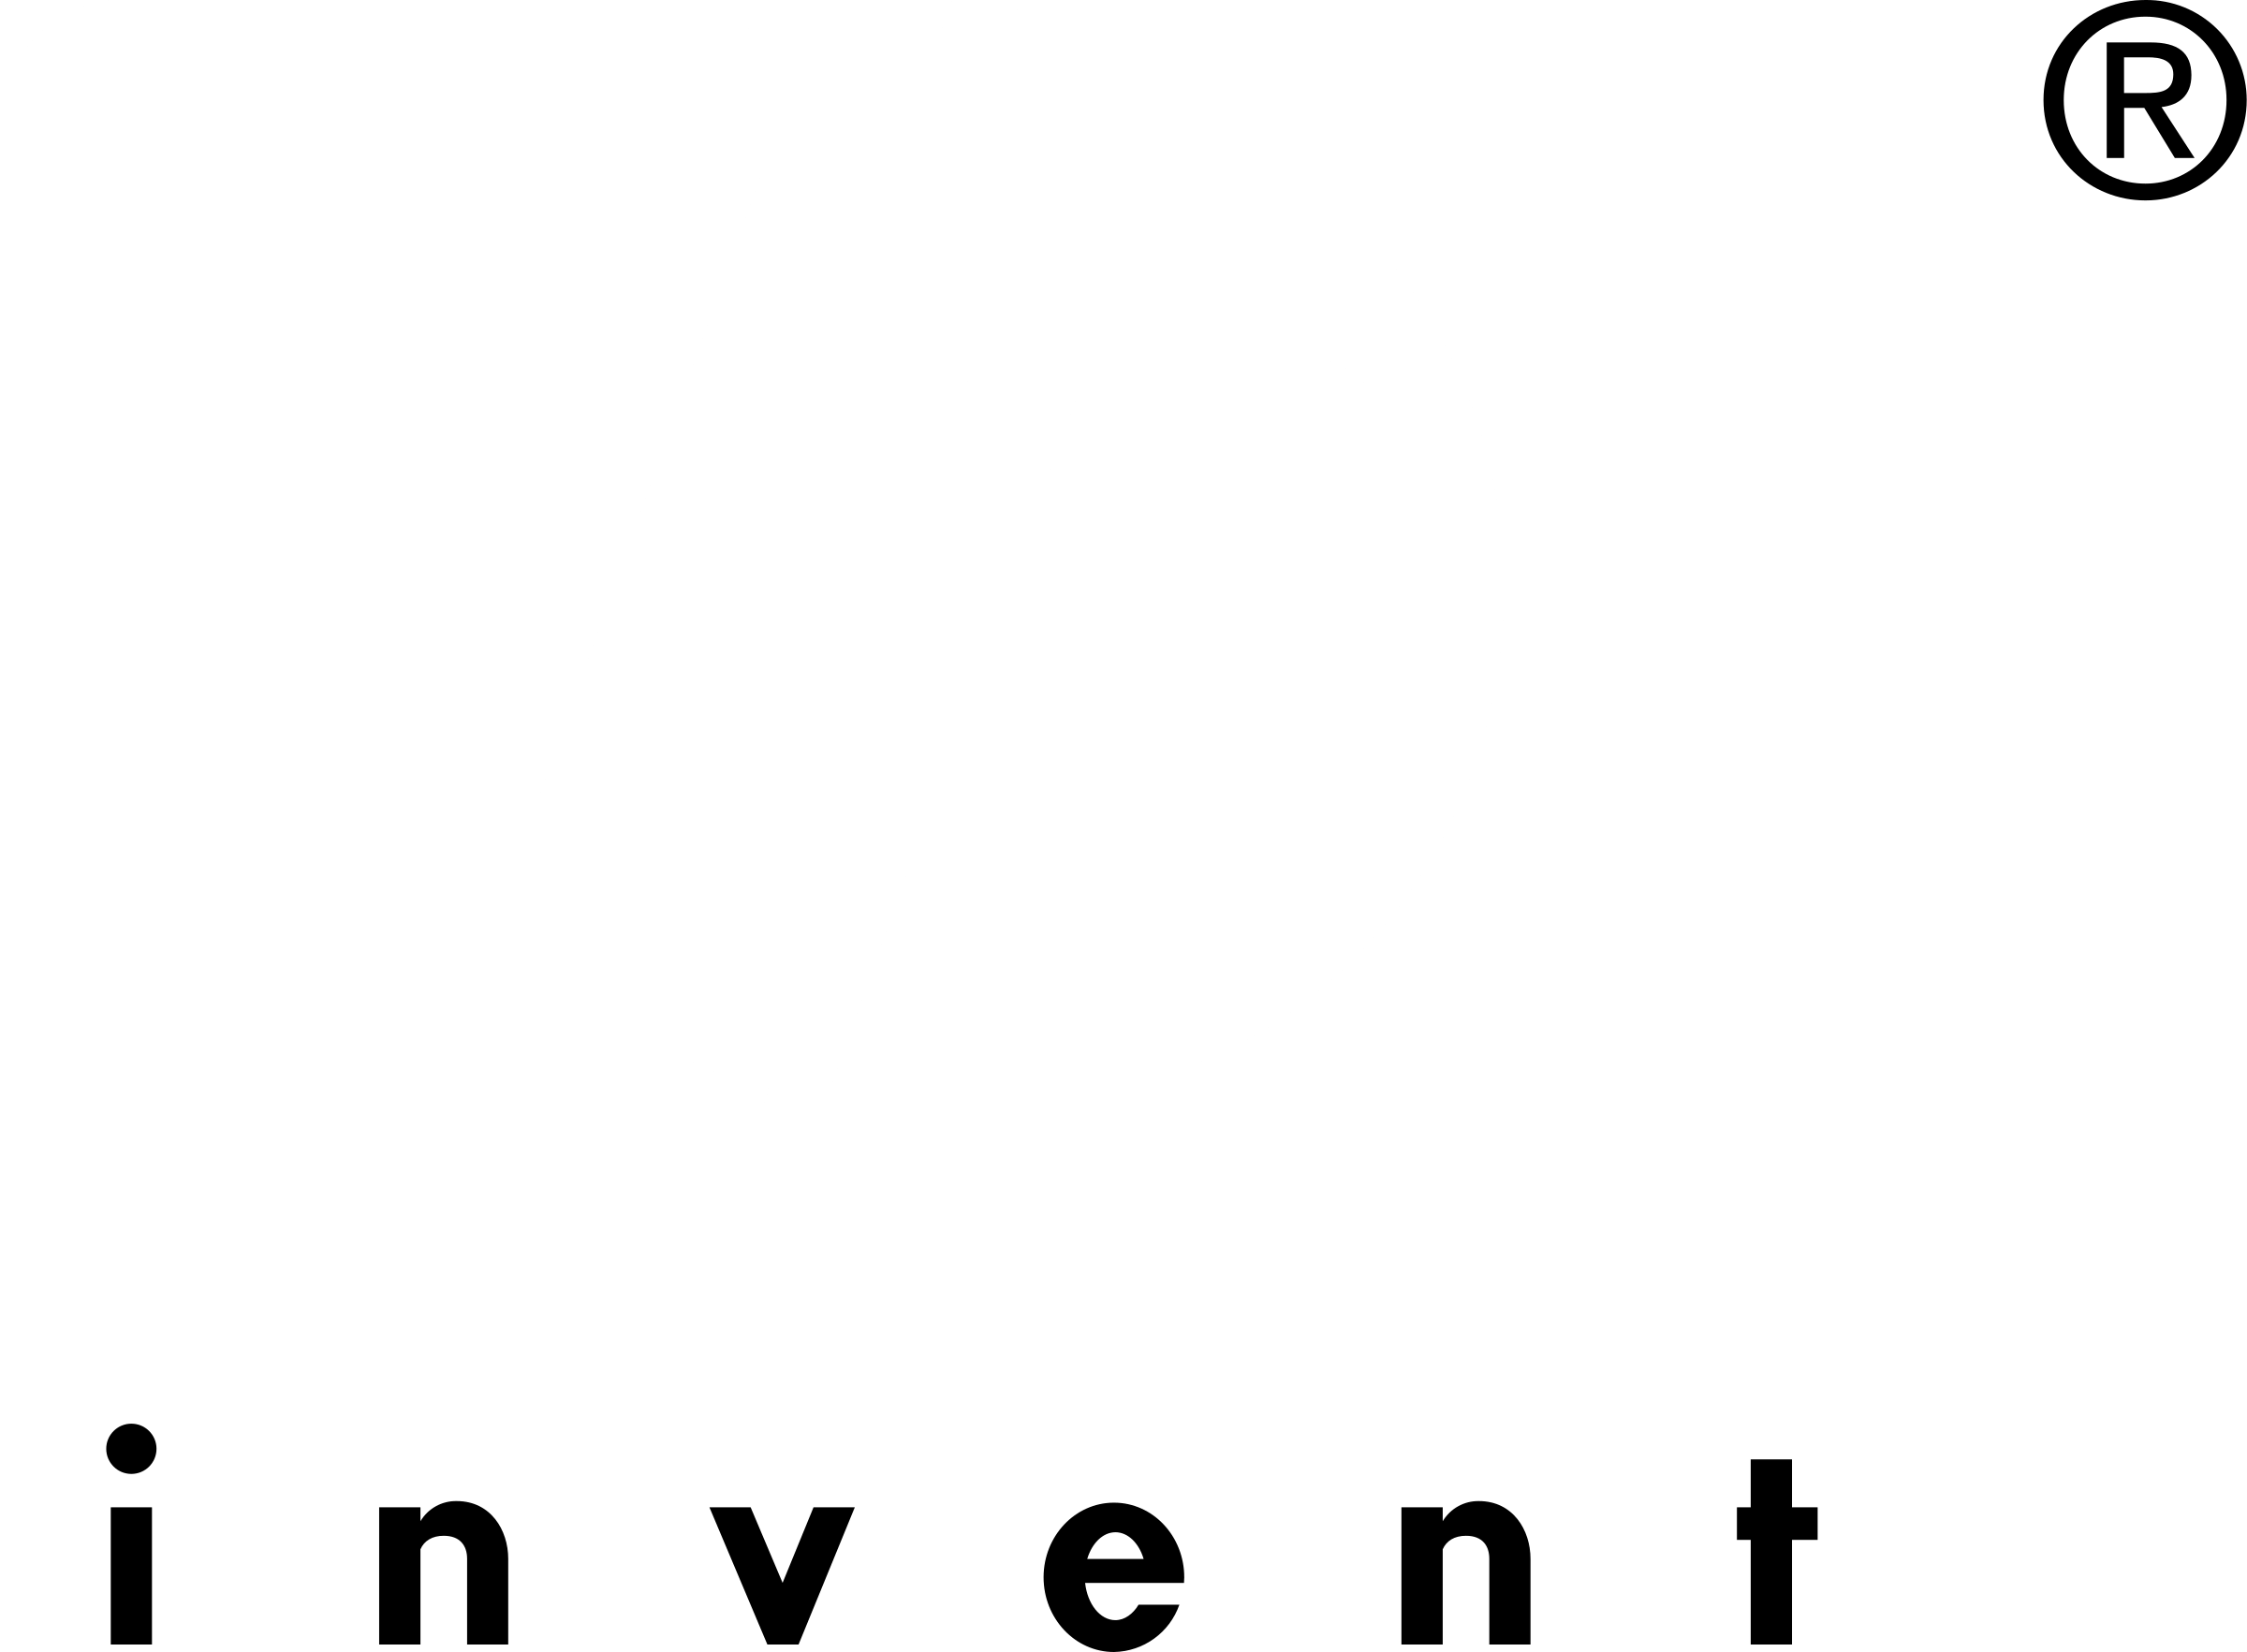 HP Invent Logo - HP INVENT 1 Logo PNG Transparent & SVG Vector